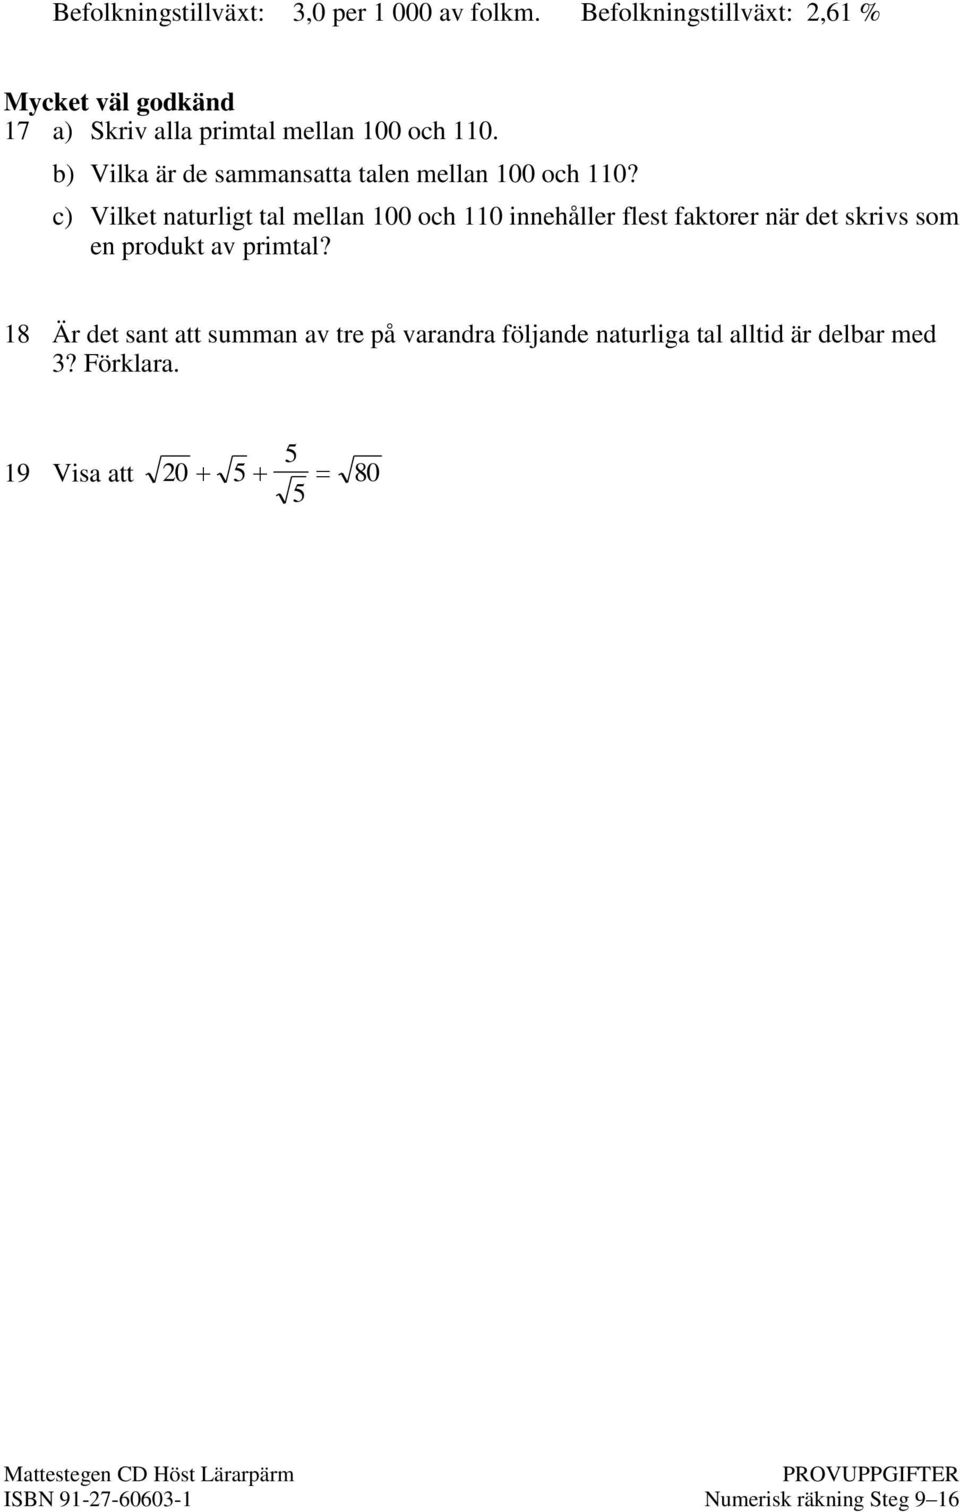 b) Vilka är de sammansatta talen mellan 100 och 110?